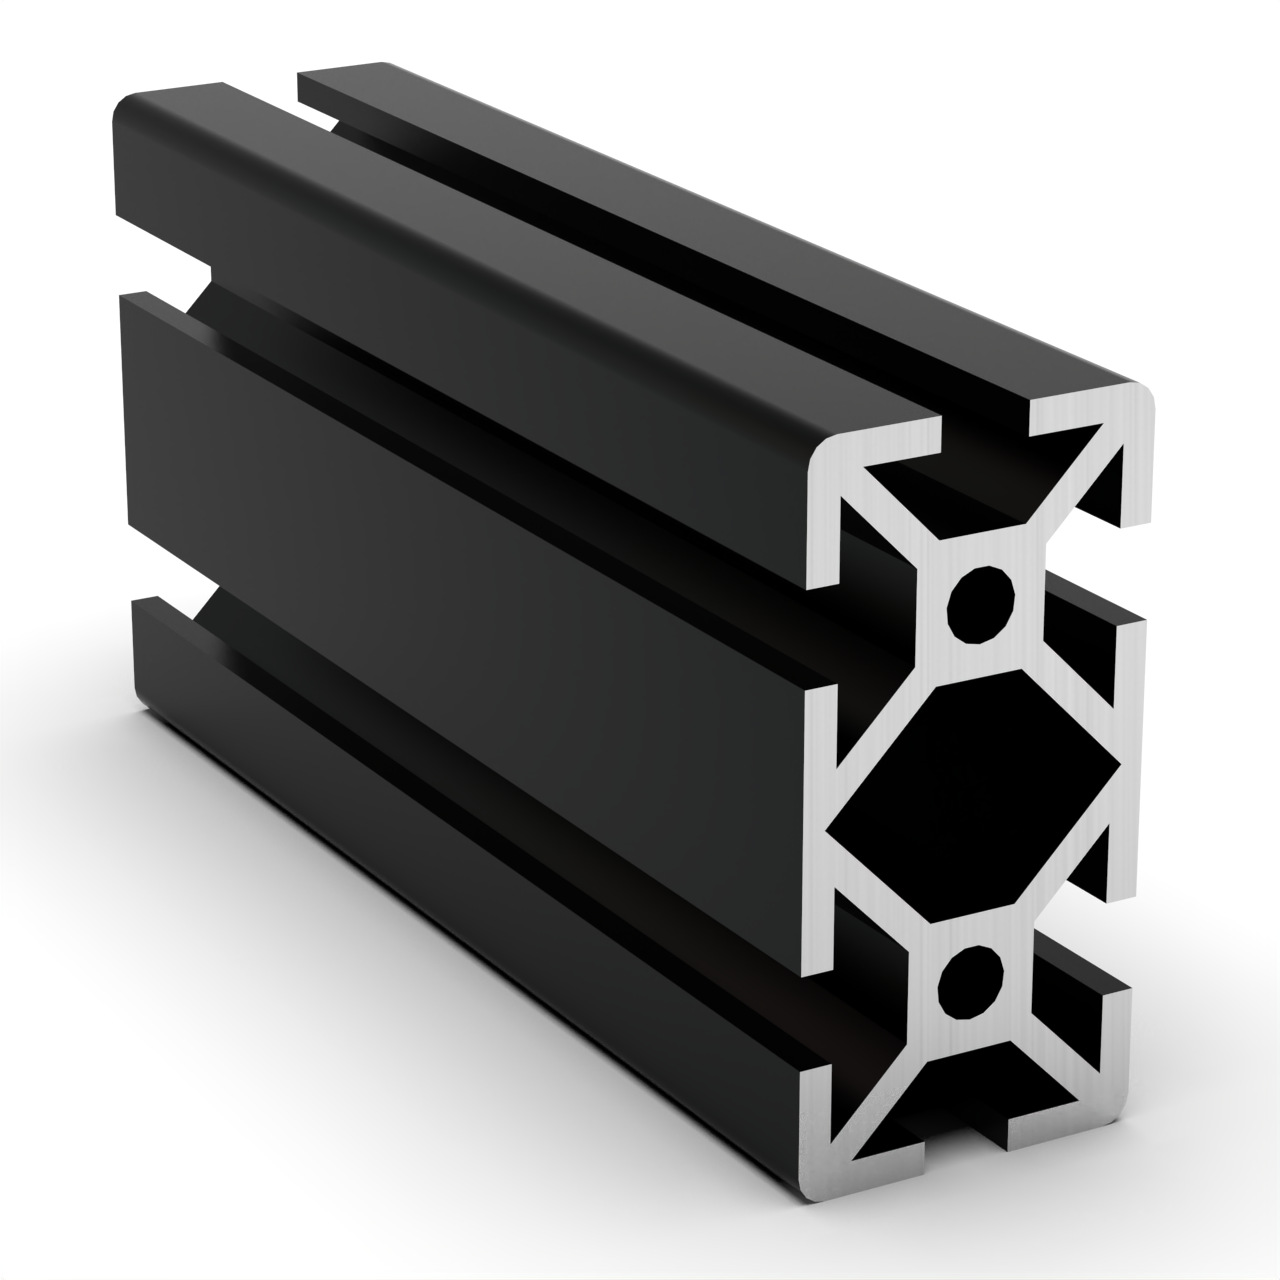 TSLOTS 1020-S-Black 1" x 2" Black Anodize .26" tslot Aluminum Framing Profile